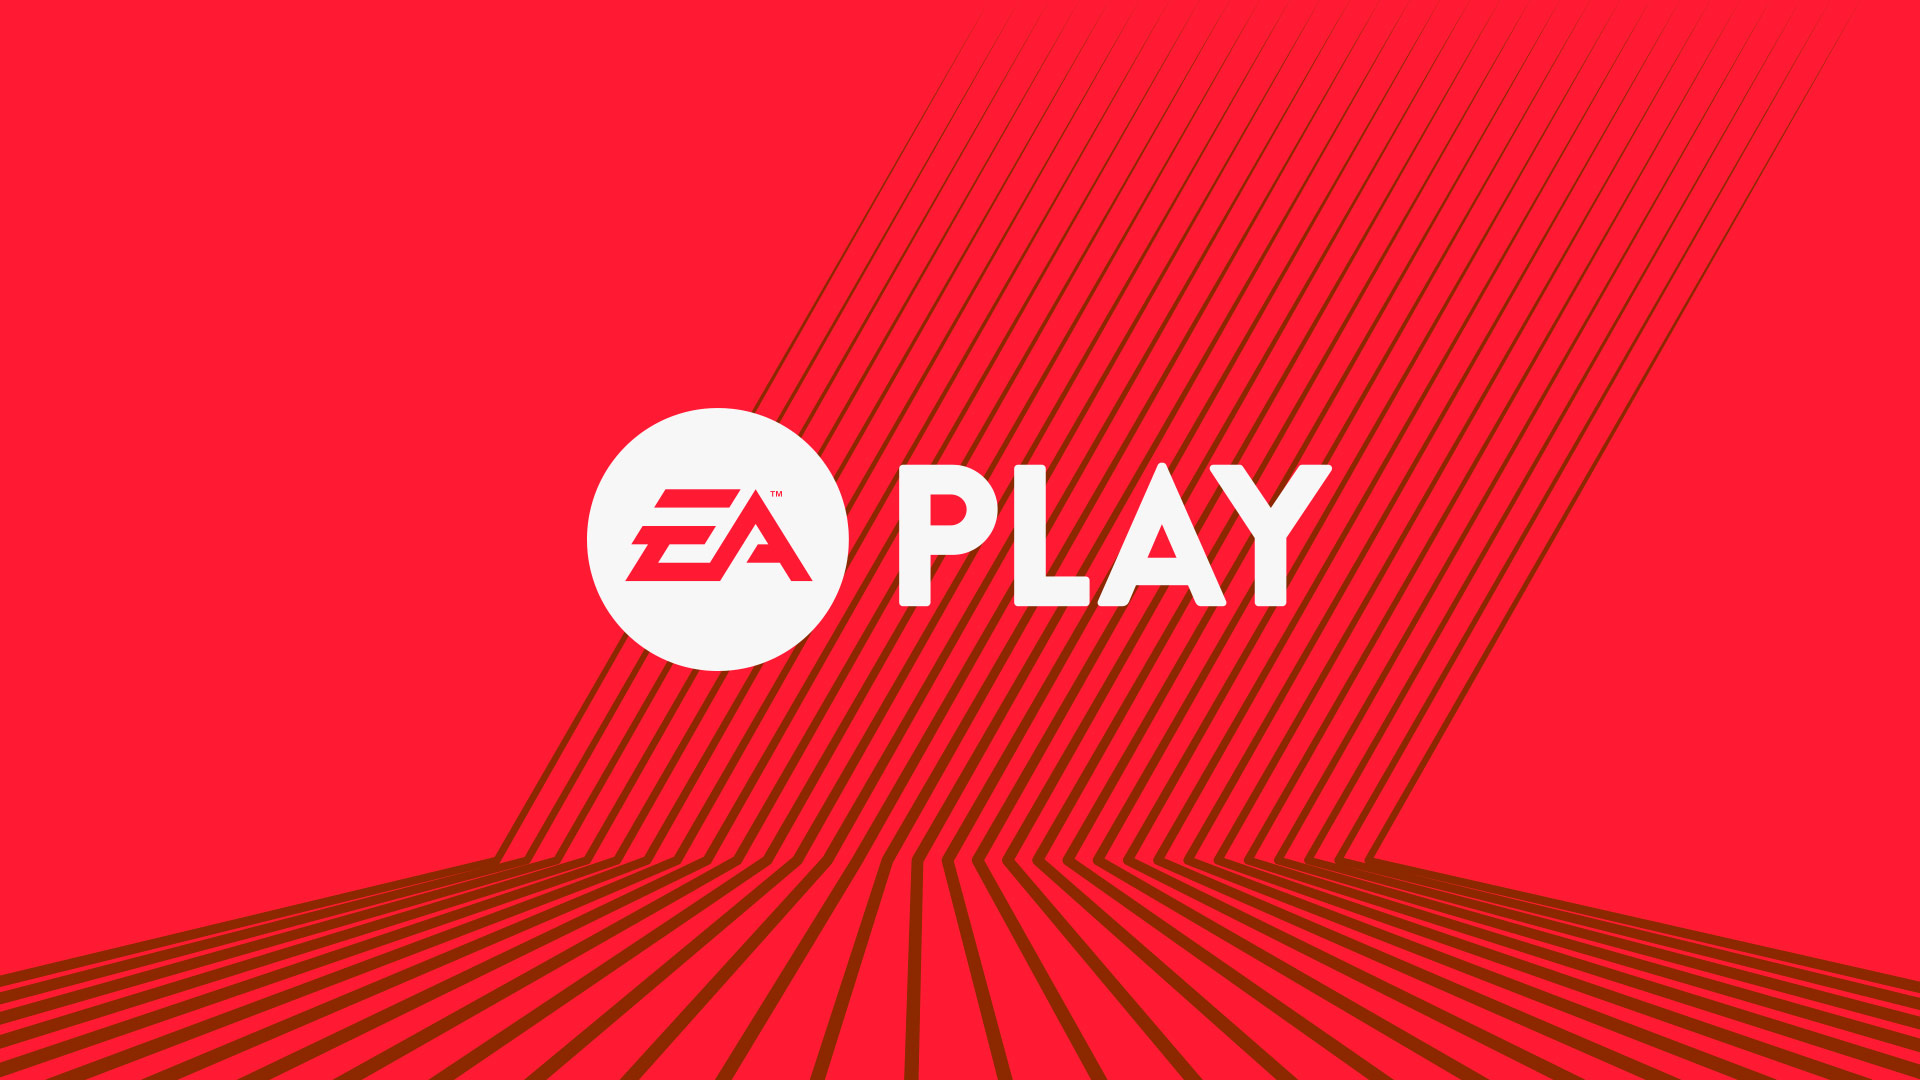 EA Play 2017 